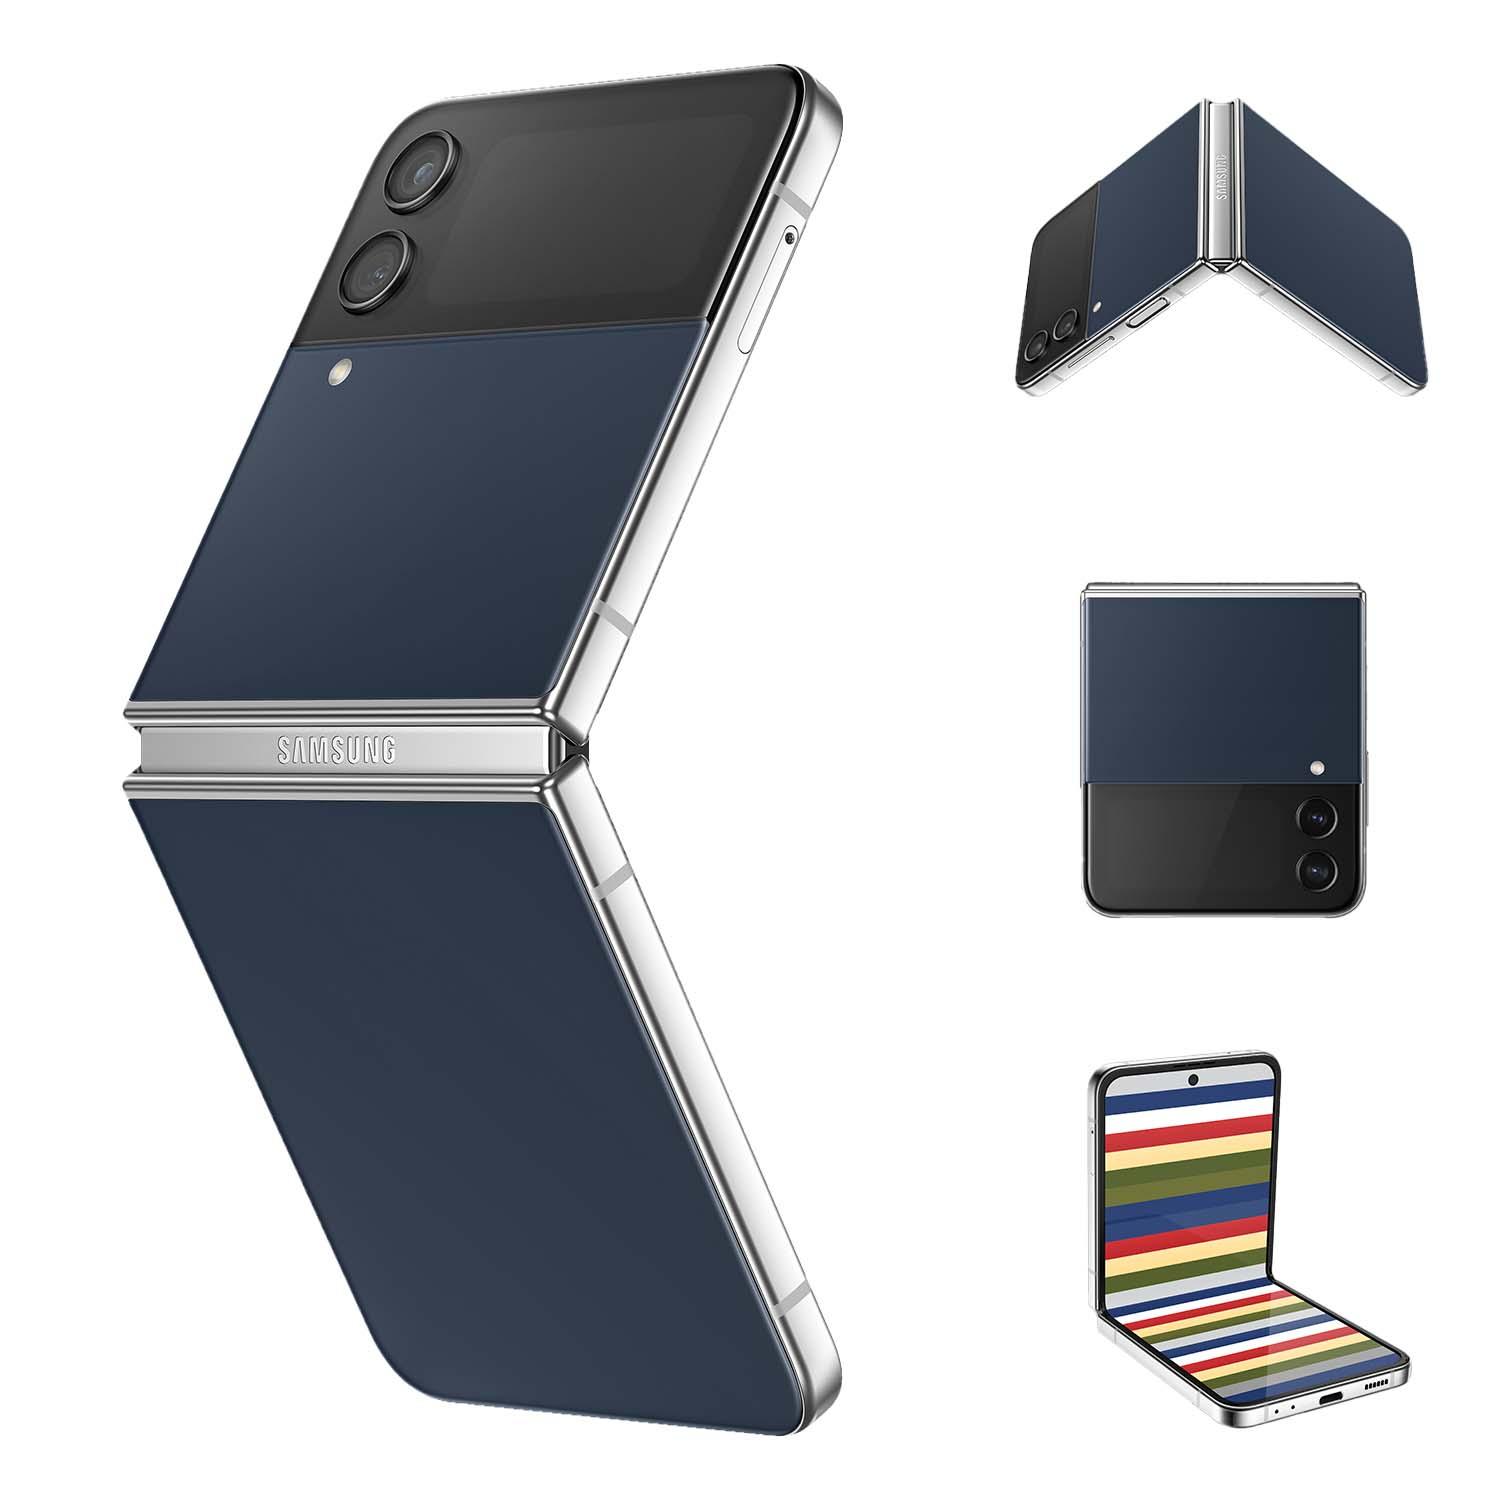 Samsung bổ sung màu sắc mới cho Galaxy Z Fold4 và Galaxy Z Flip4